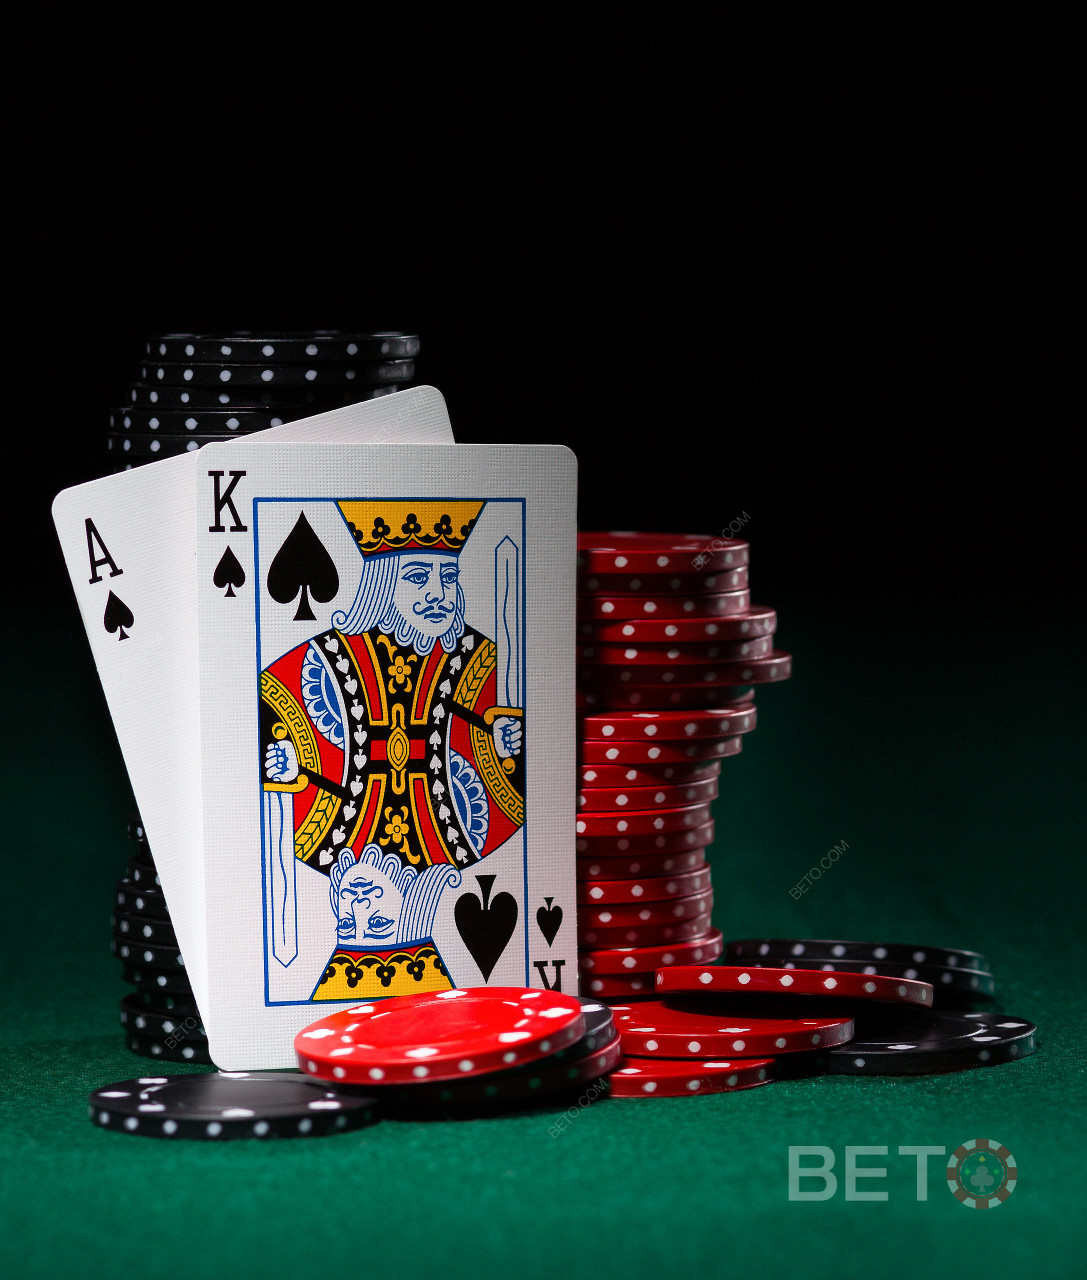 Poker wideo i gry karciane są również dostępne w BitStarz.